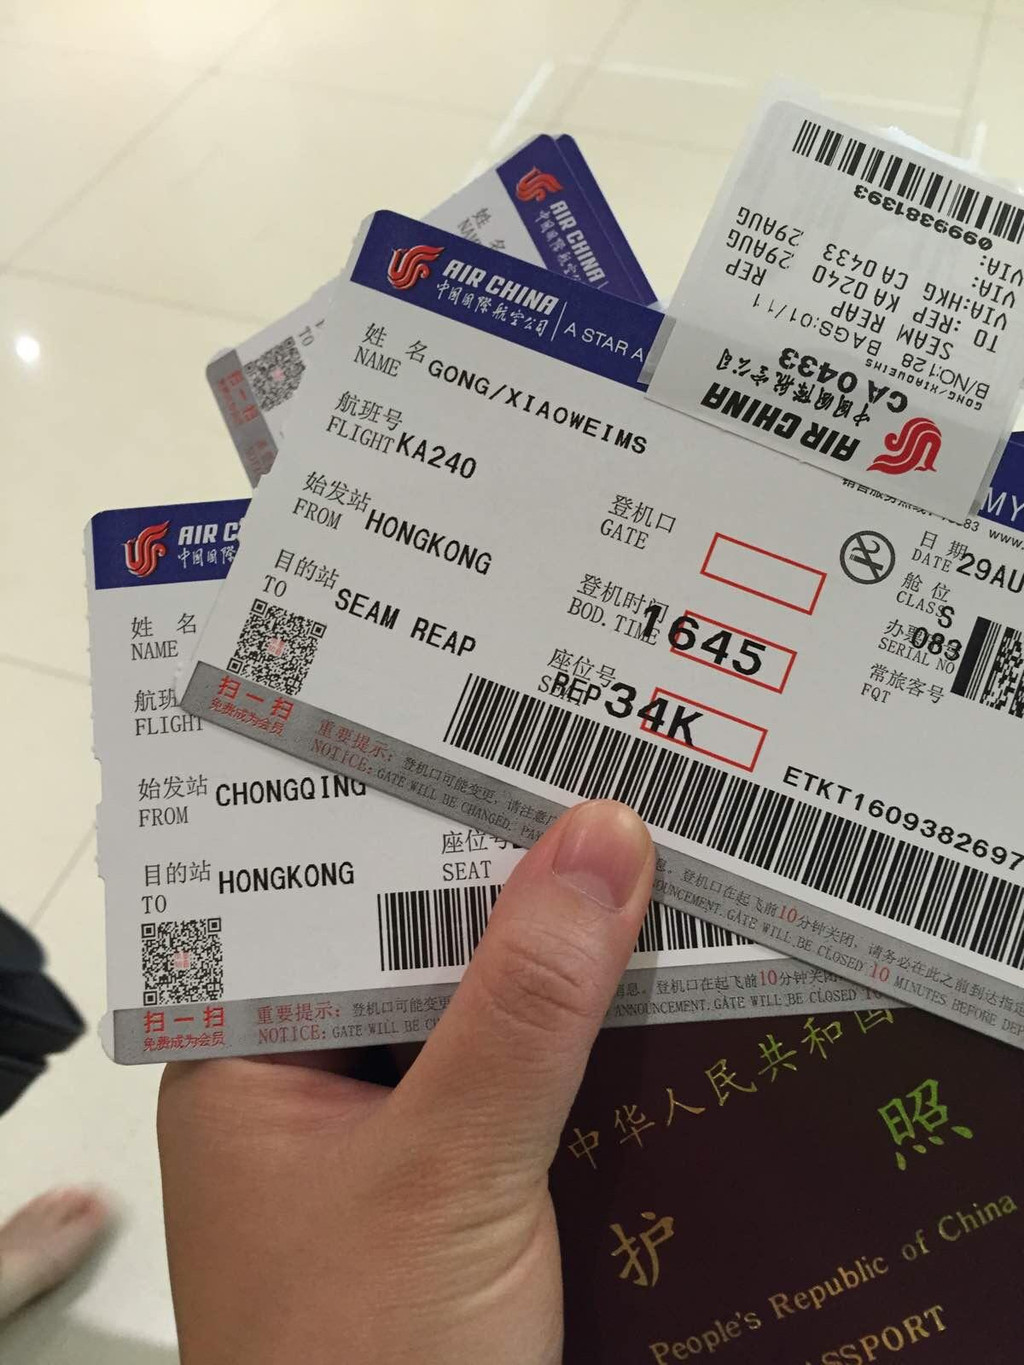 现在是2015年8月29日8点35分,我在重庆江北国际机场等待出发.